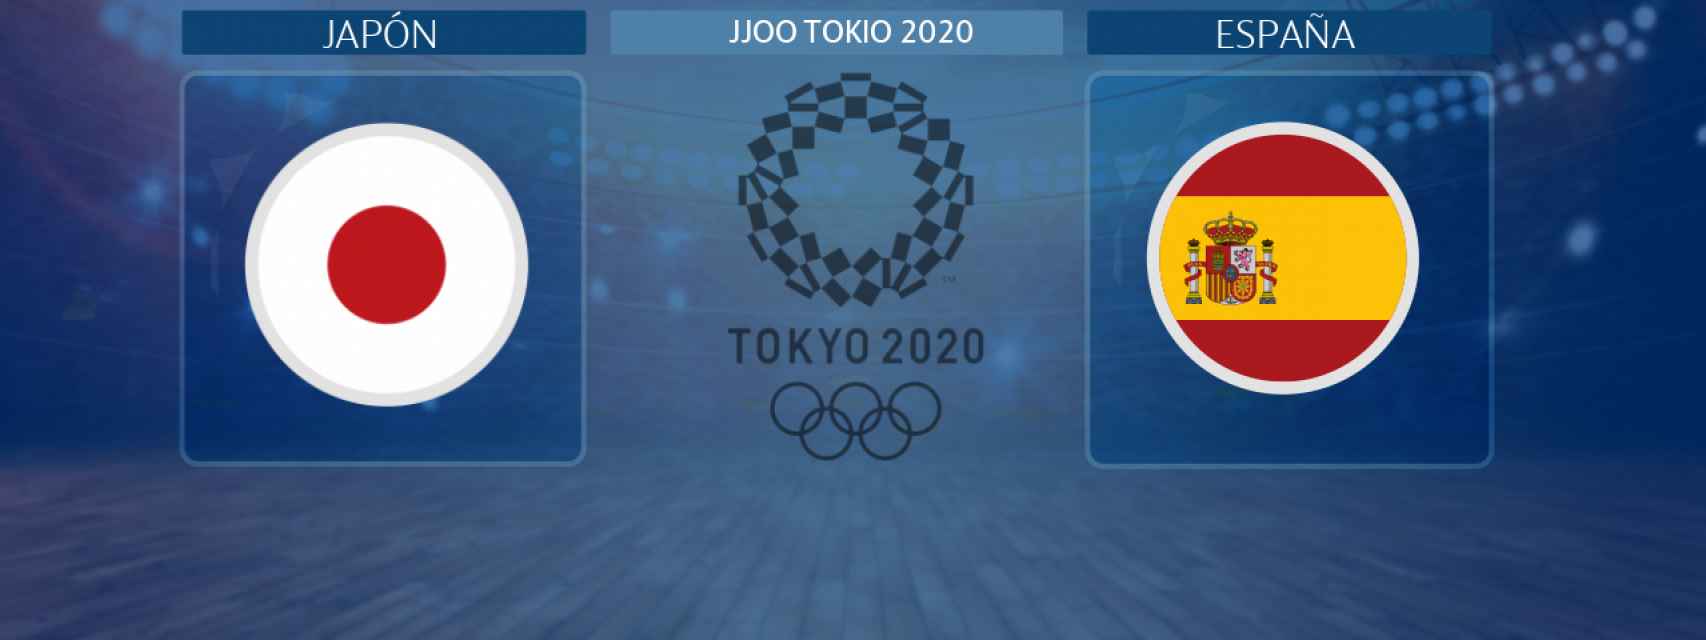 Japón - España, partido de baloncesto masculino de los JJOO Tokio 2020